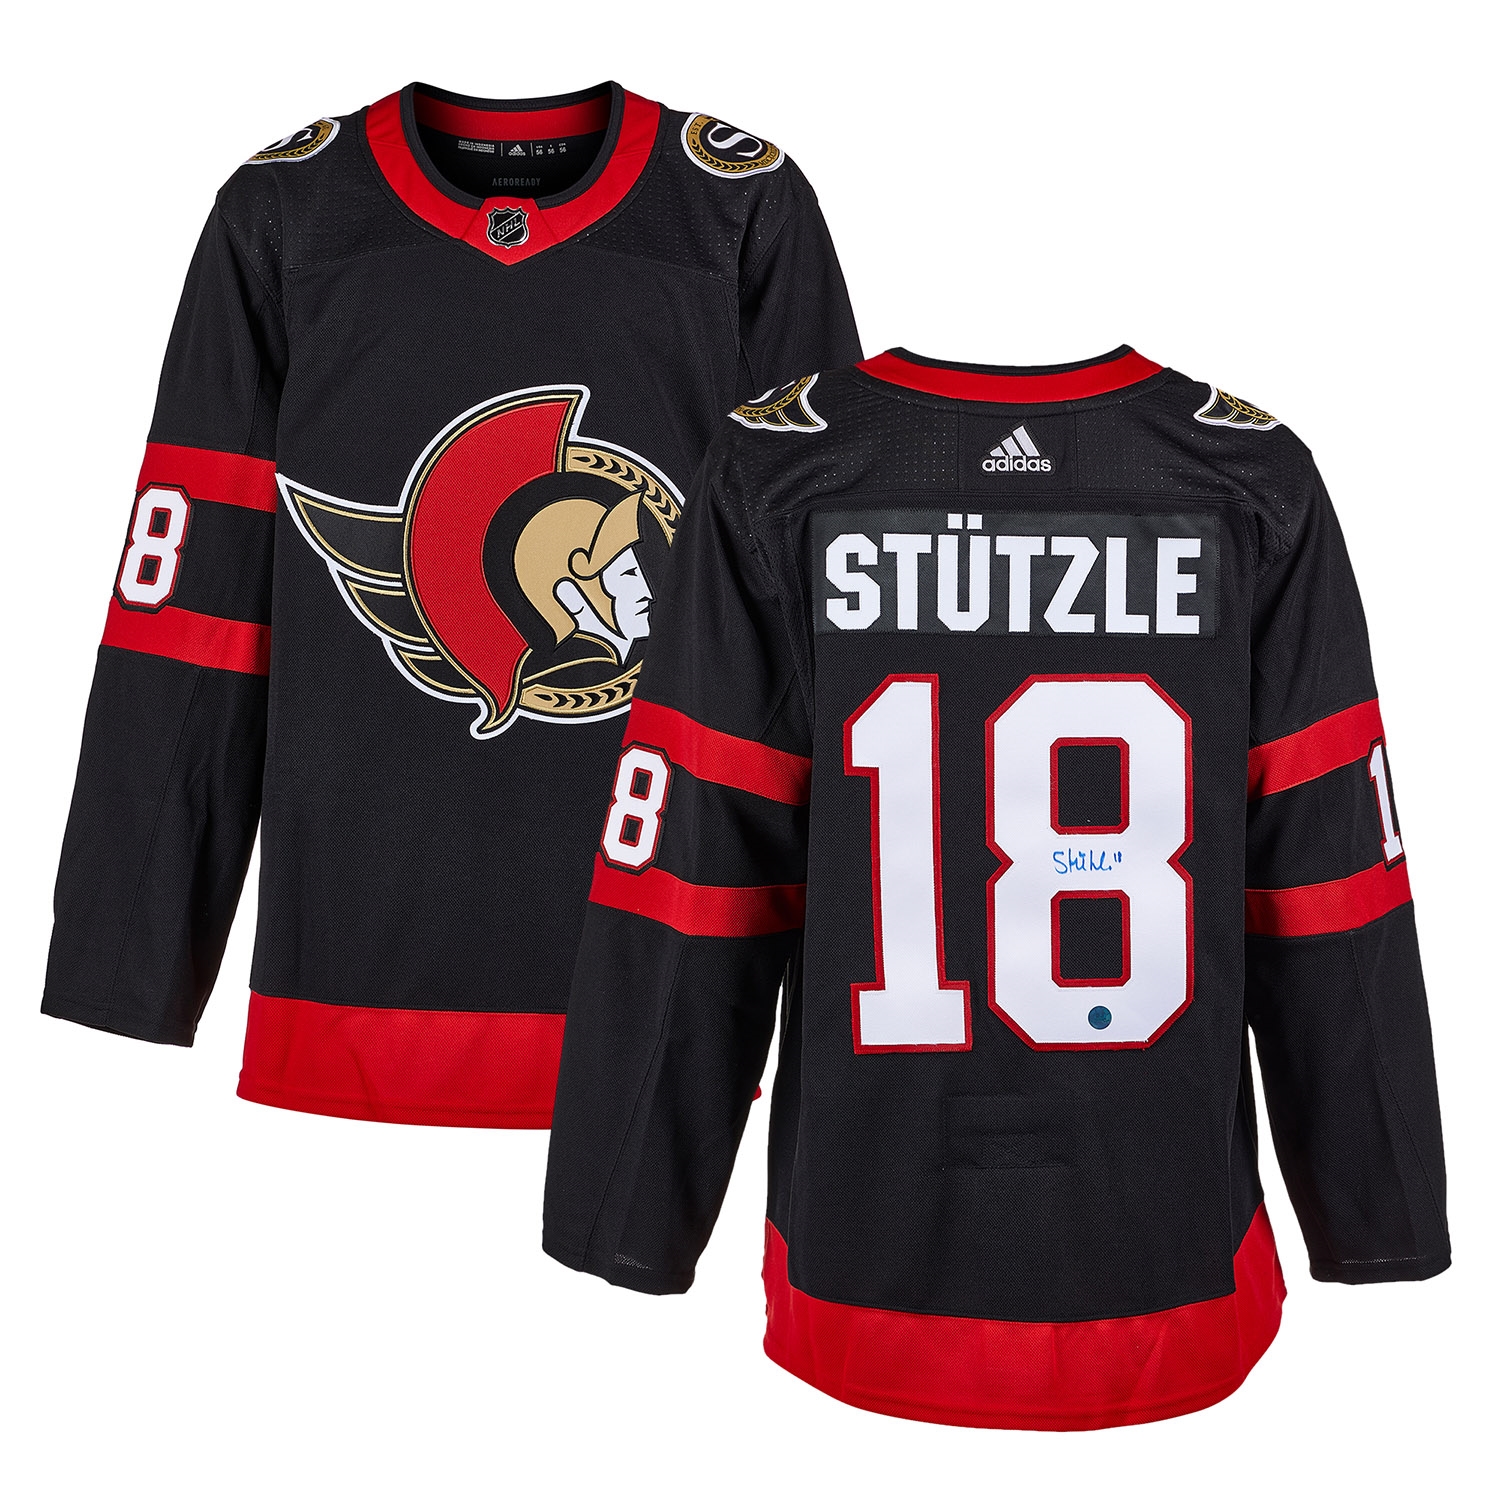 Tim Stutzle Ottawa Senators Autographed adidas Jersey